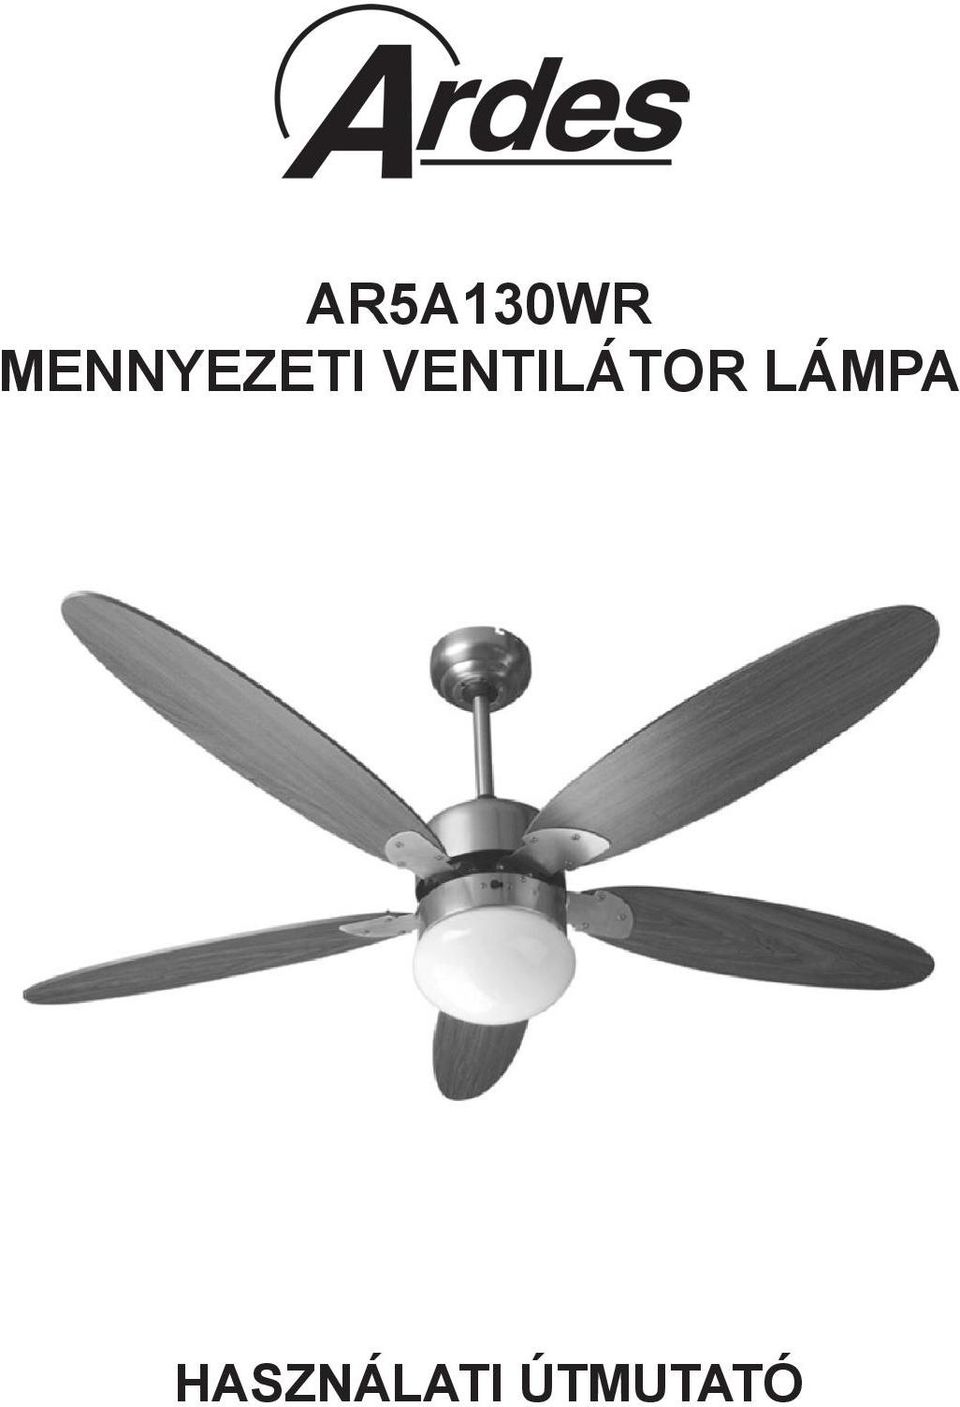 Mennyezeti ventilátor lámpa bekötése